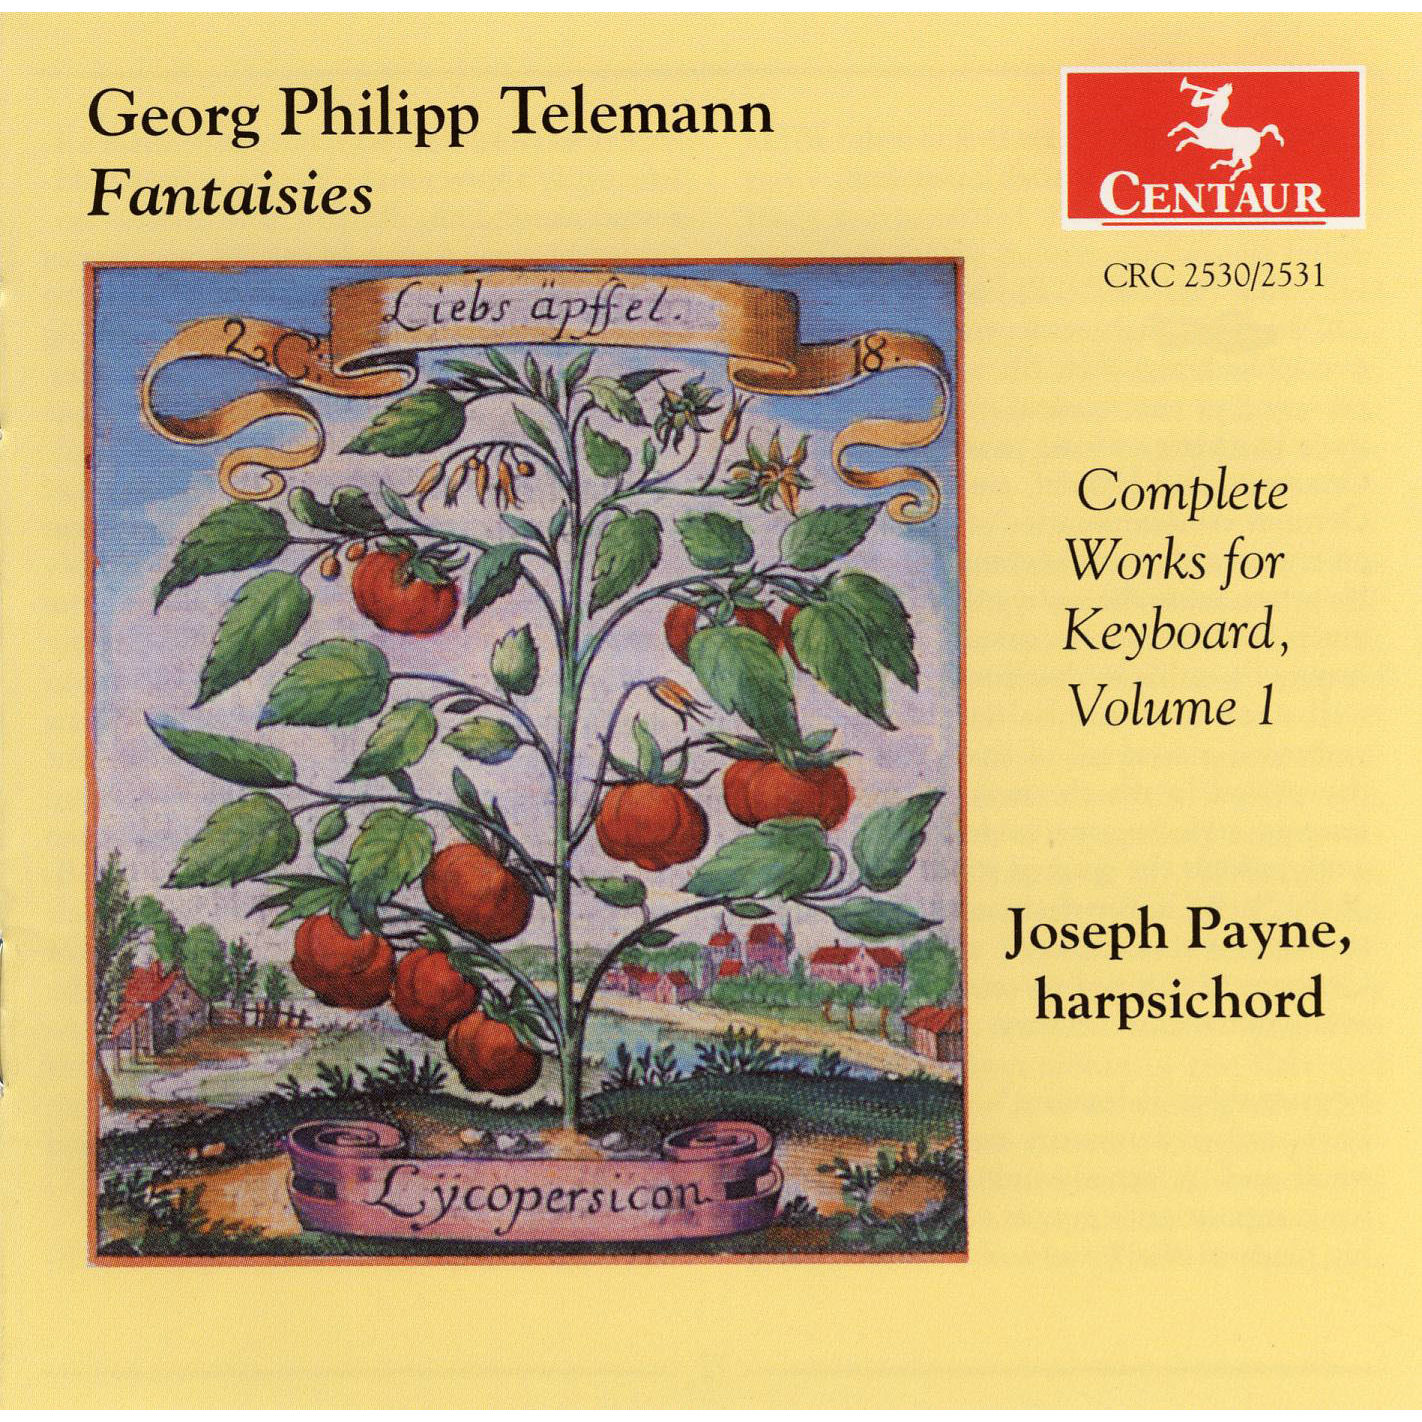 Telemann - Fantasies - Joseph Payne, harpsichord 2CDs equiv